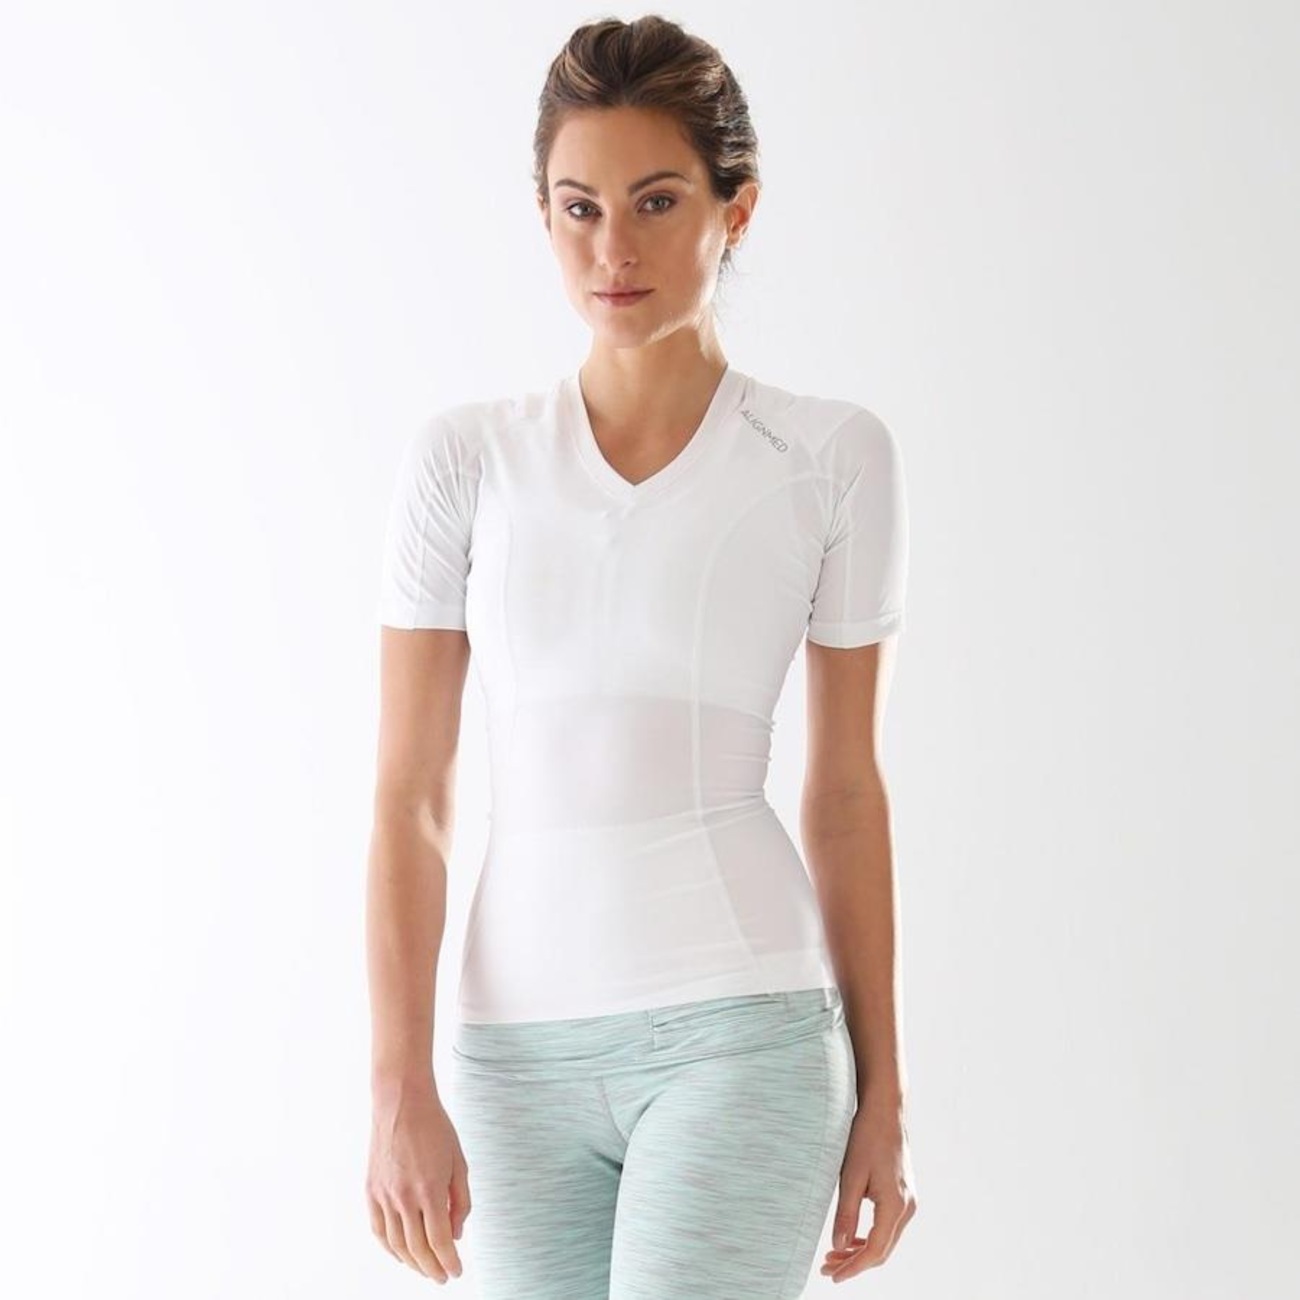 Camiseta Postural Alignmed Brasil Posture Shirt - Feminina